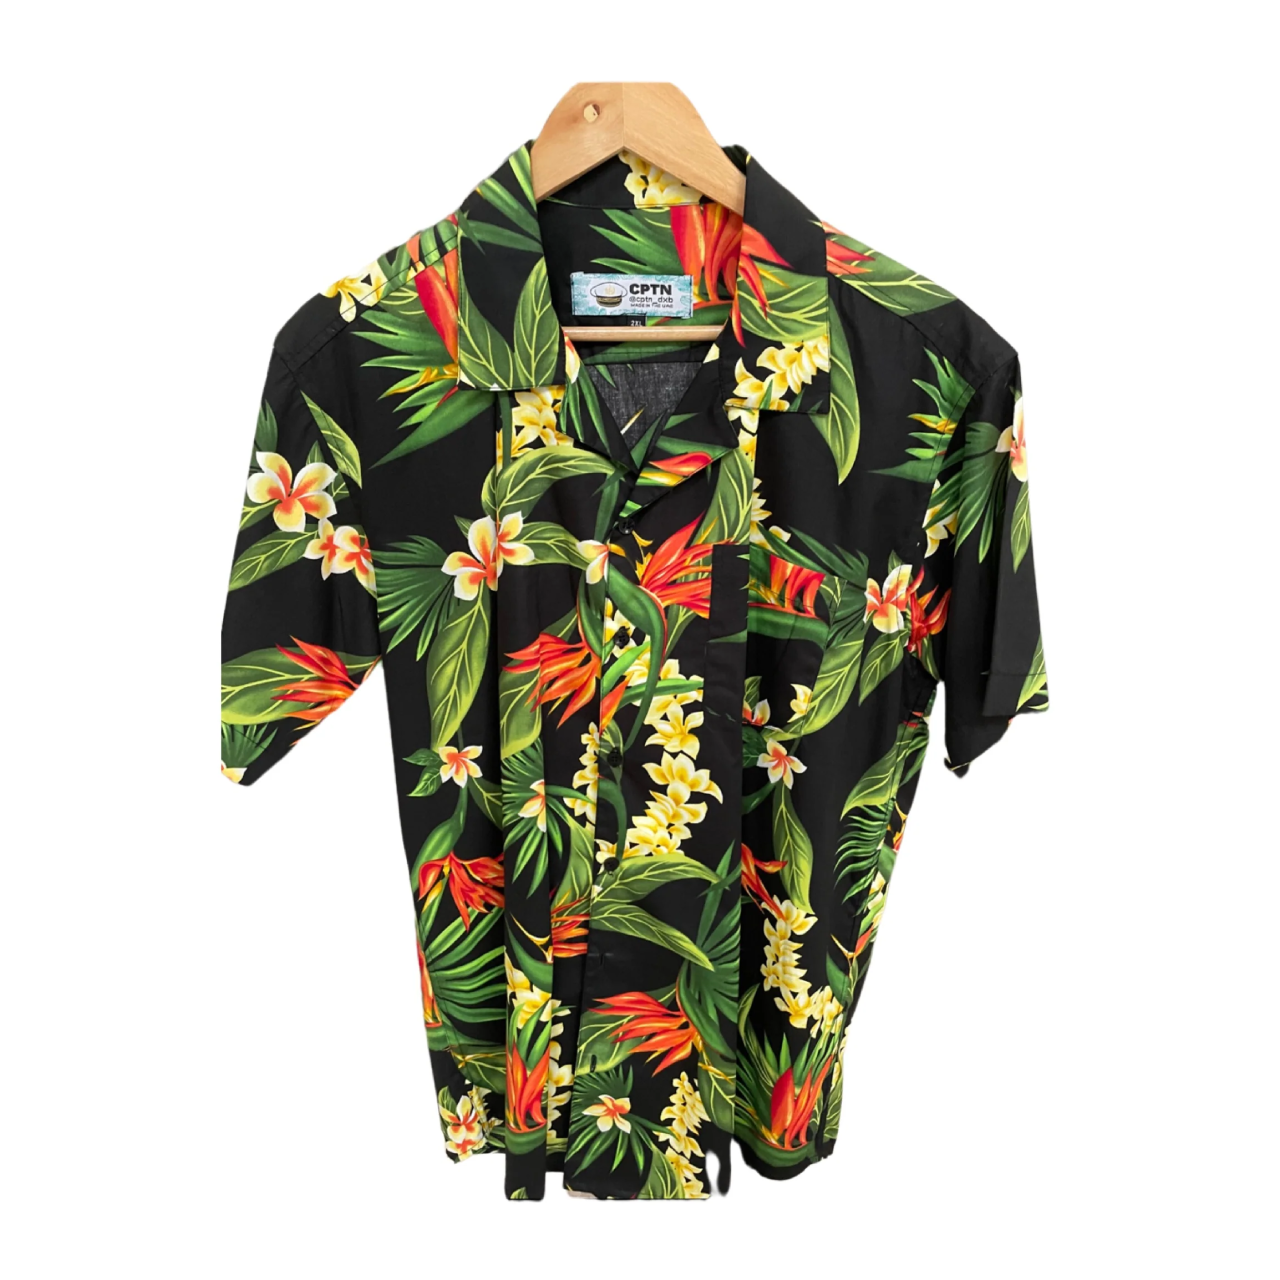 يعد قميص CPTN الصيفي طريقة أنيقة ومتعددة الاستخدامات لإضافة لمسة من الأناقة إلى خزانة ملابسك